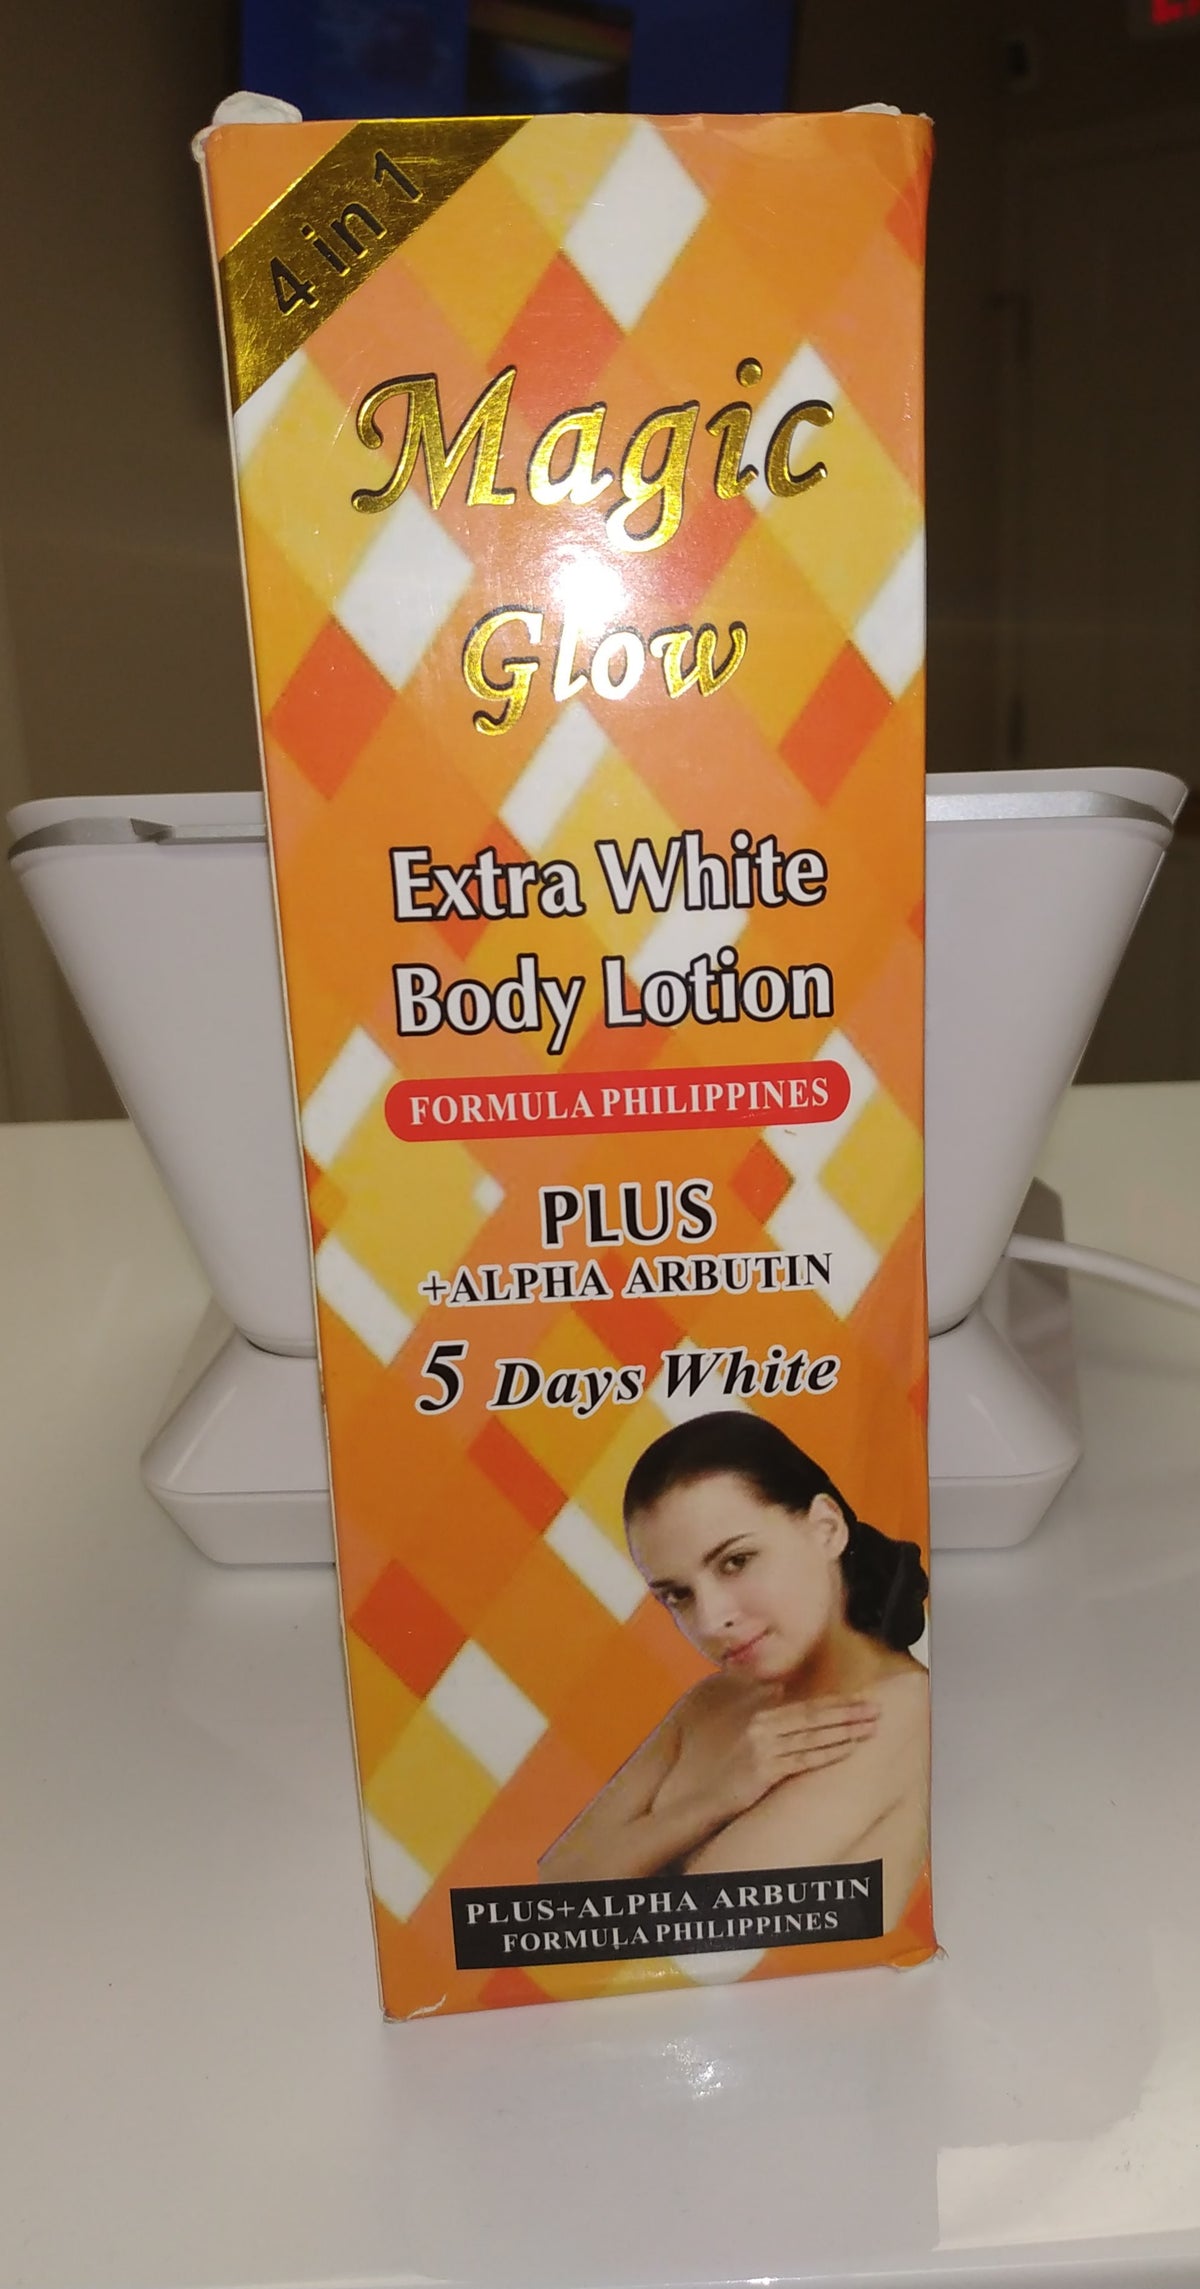 Magic glow Extra White body lotion plus Alpha Arbutin 5 days white